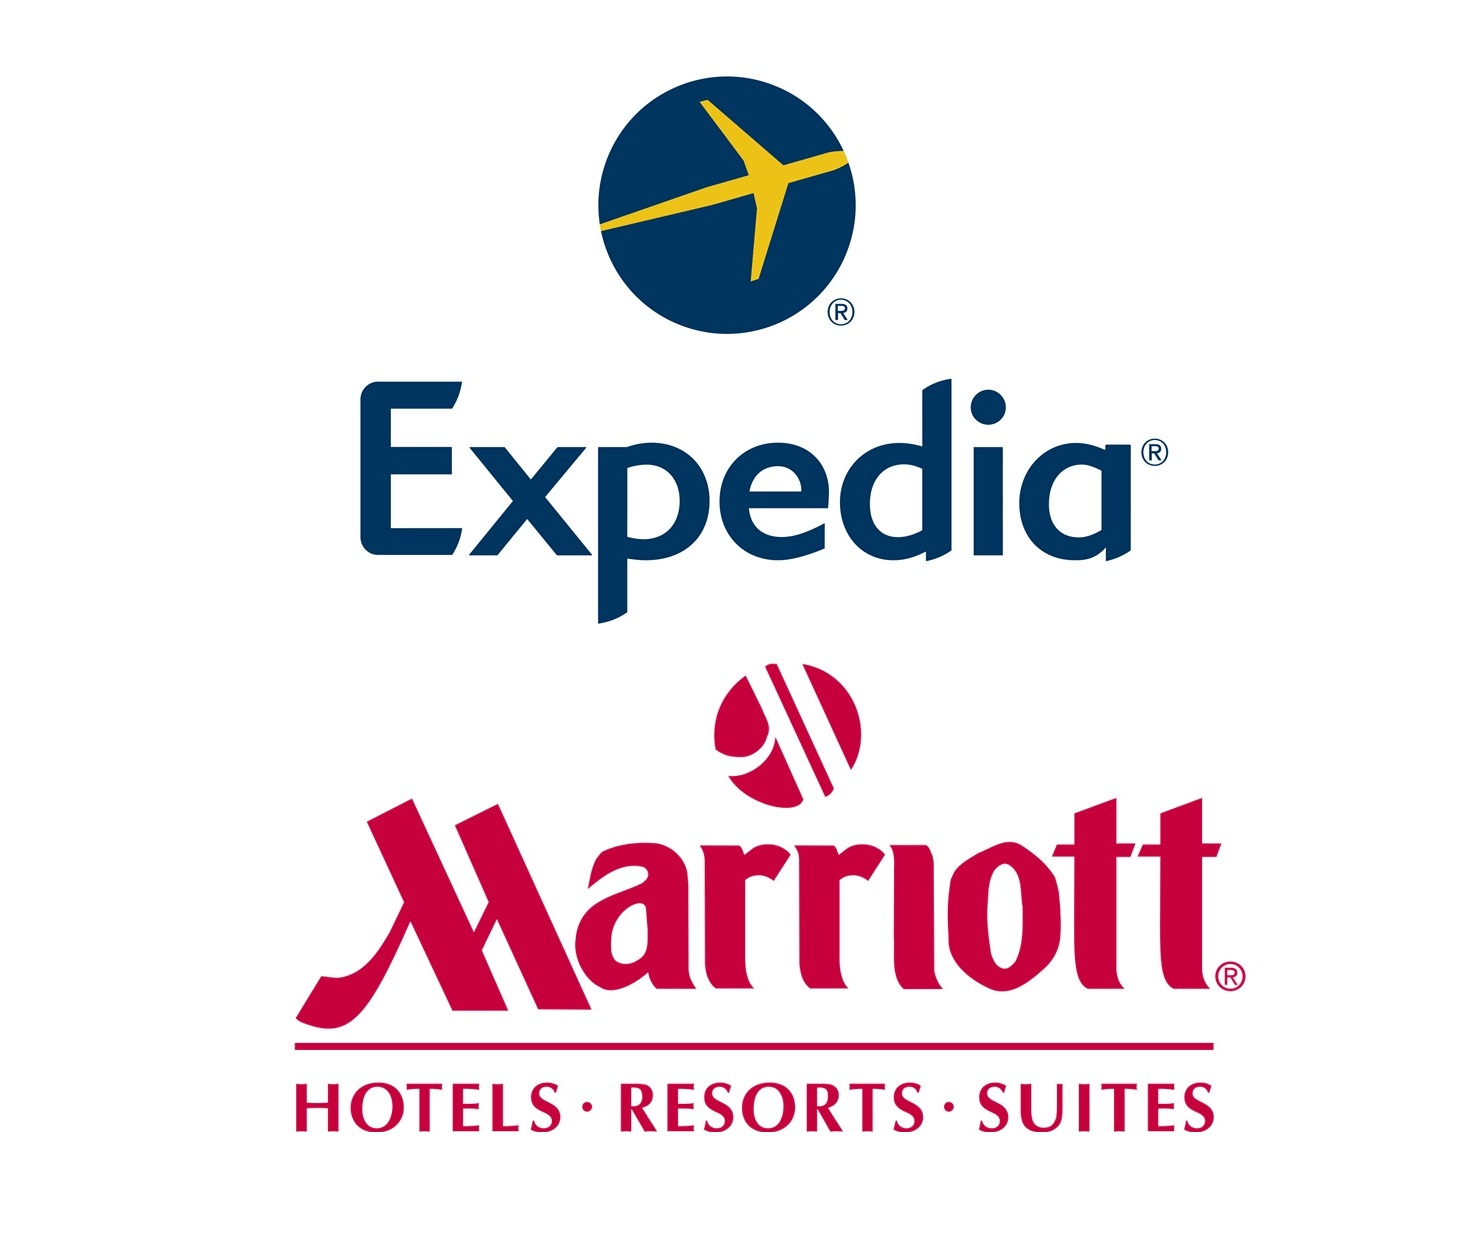 Logo da companhia hoteleira Marriott e da Operadora de Viagens Expedia